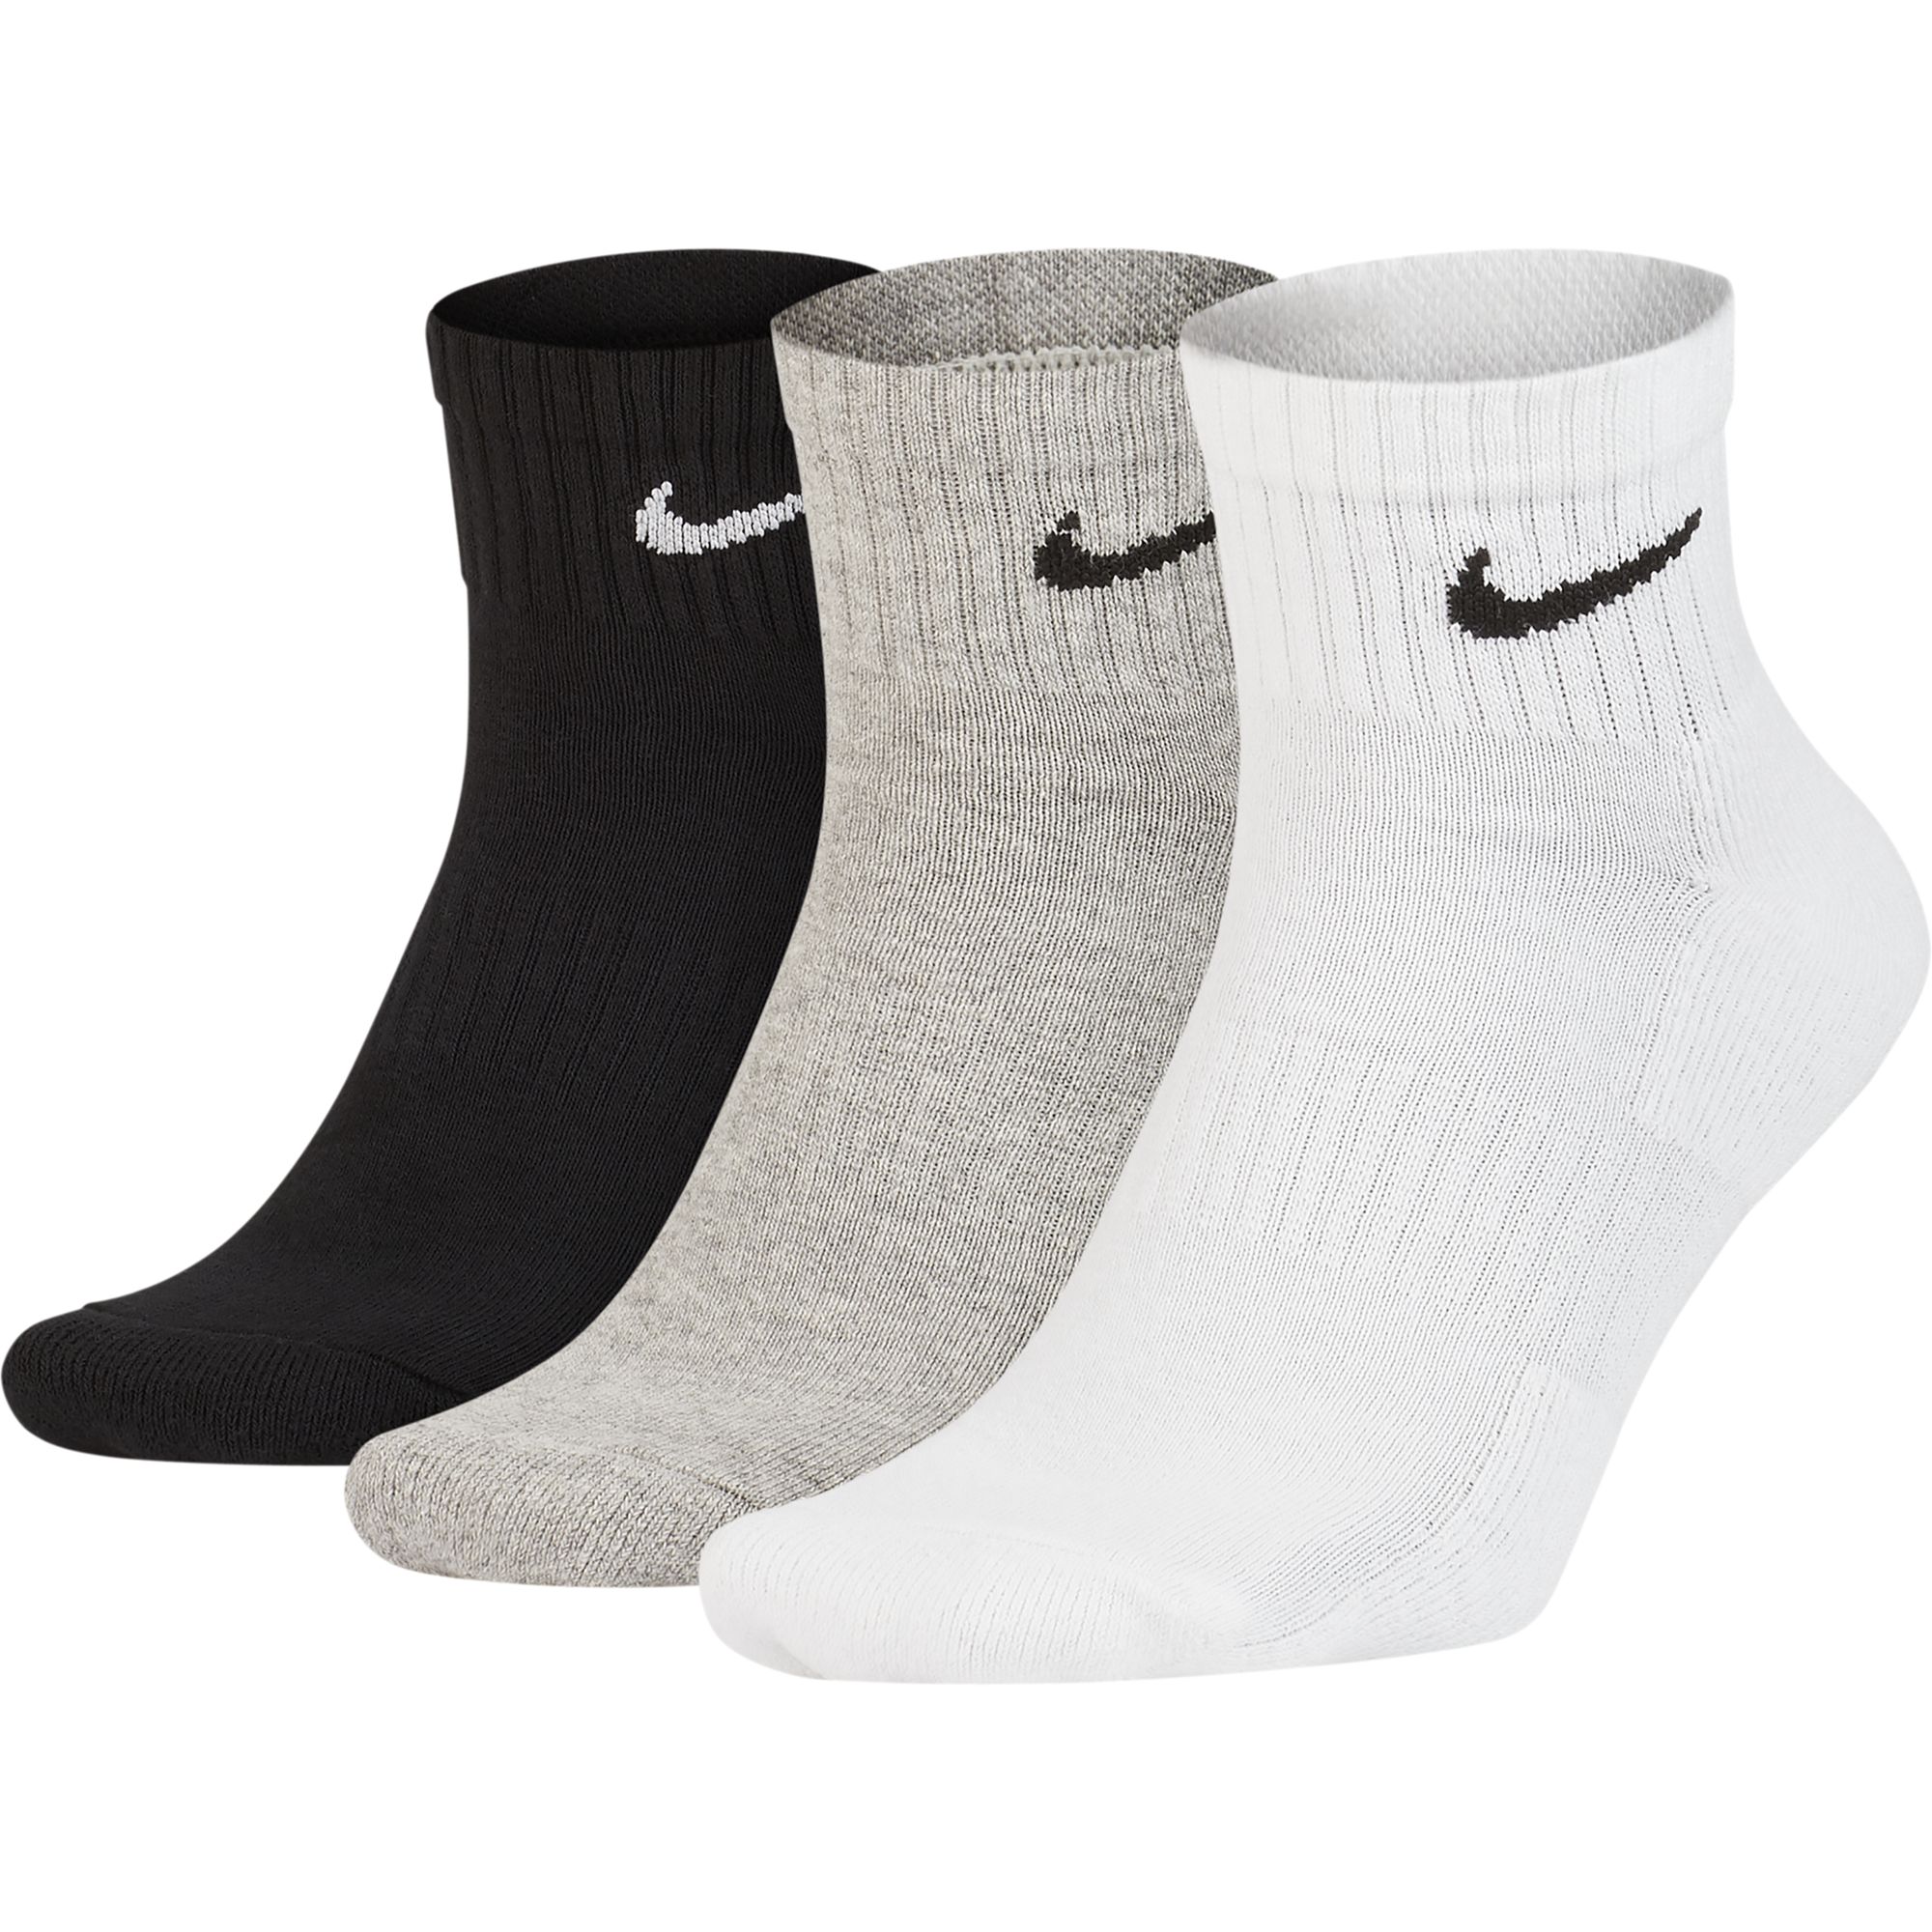 Носки Nike Everyday Cushion Ankle - картинка